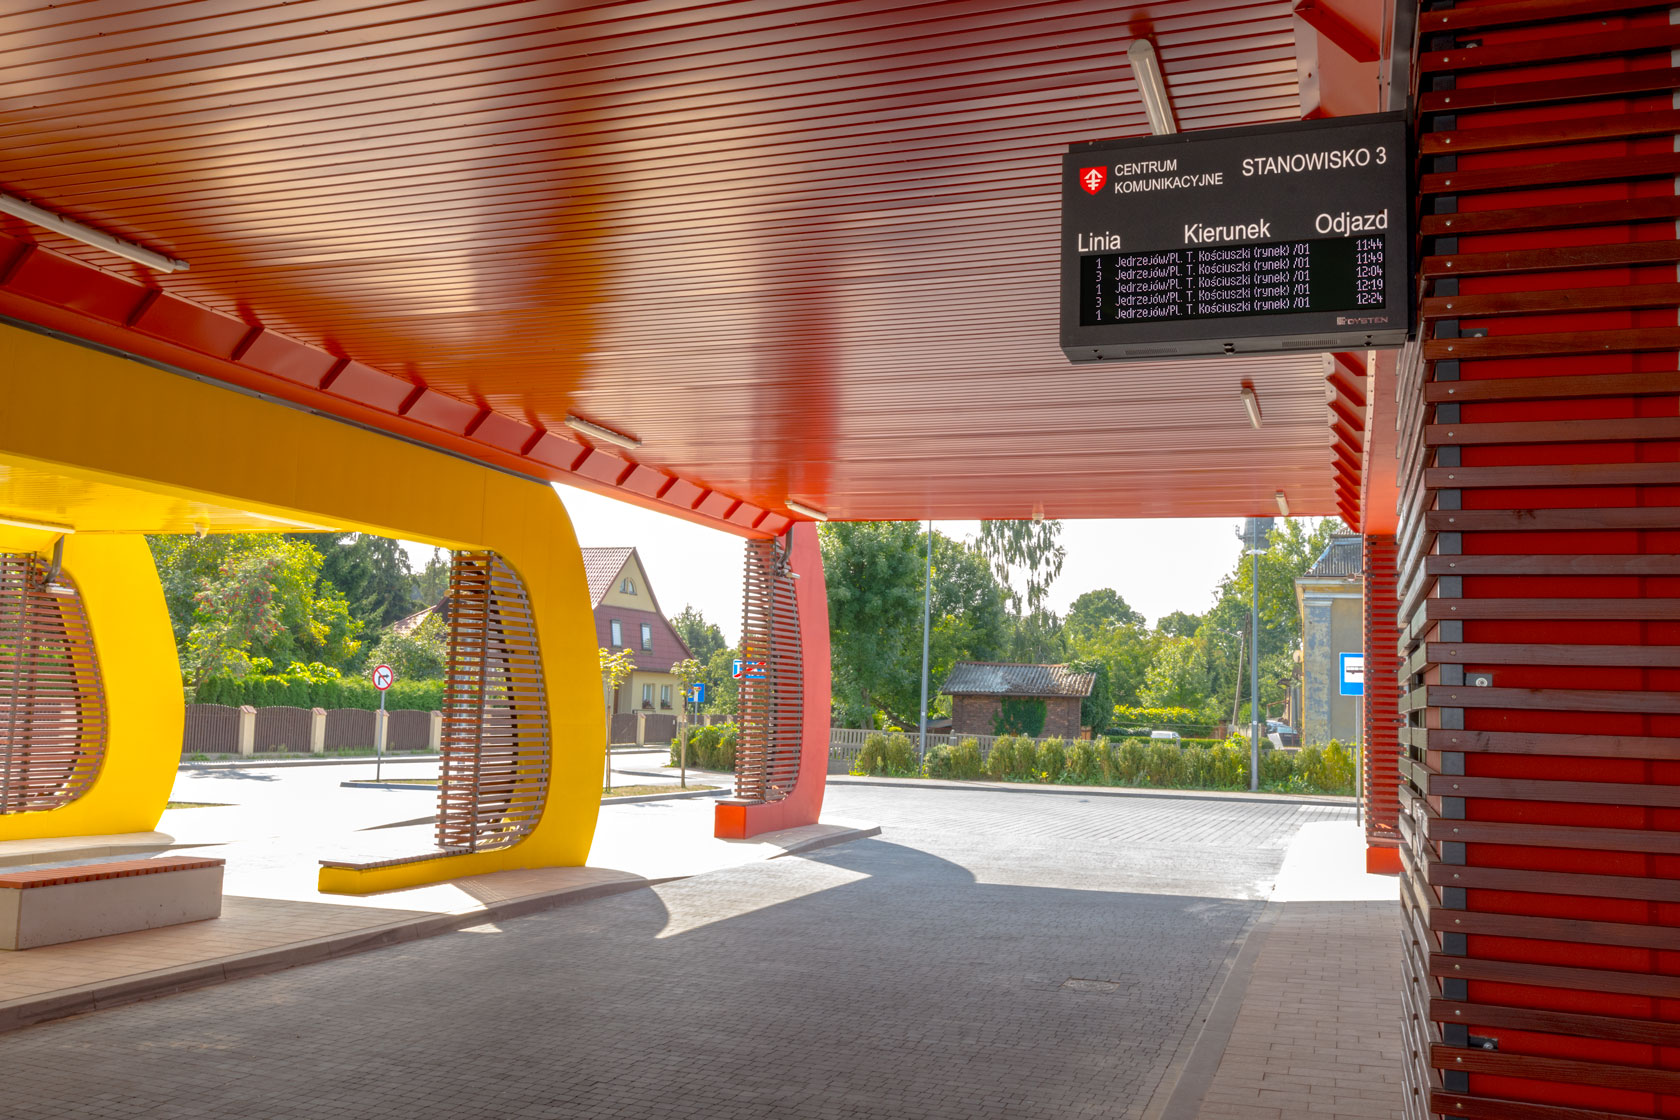 Real-time LED Passenger Information Display Boards in the Jedrzejow interchange. Wyświetlacze dynamicznej informacji pasażerskiej LED RGB - Centrum przesiadkowe w Jędrzejowie, obok stacji PKP.